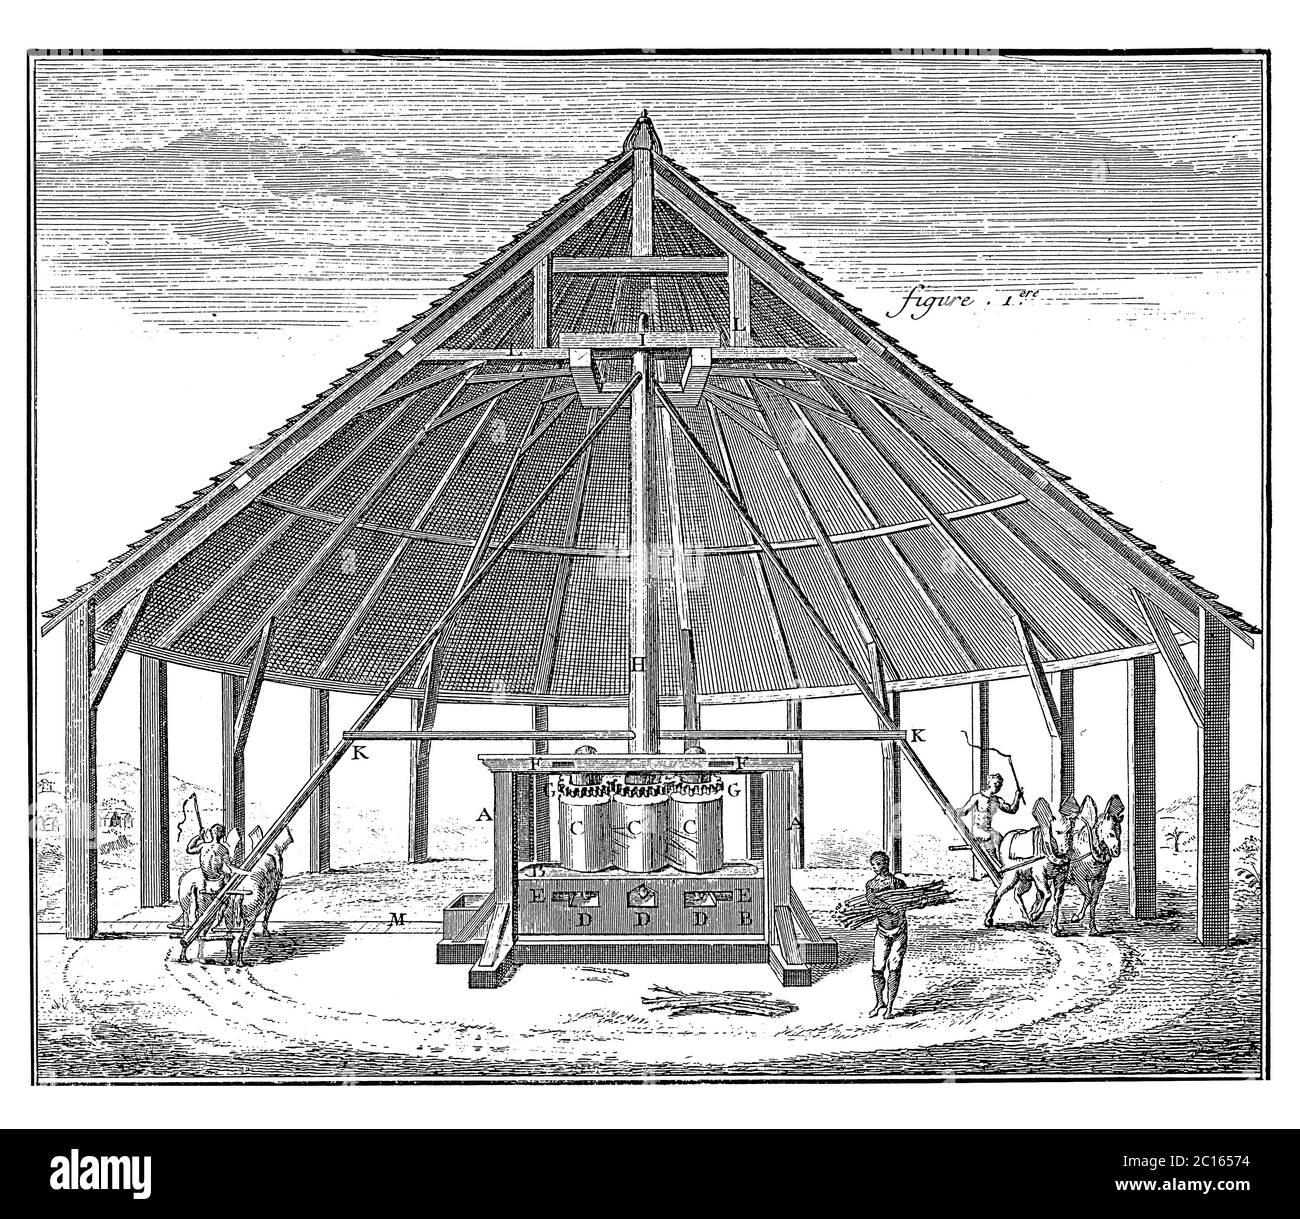 illustration du xviiie siècle d'un moulin à sucre de canne qui fonctionne avec la puissance. Publié dans 'A Diderot Pictorial Encyclopedia of Trades and Industry. Manu Banque D'Images